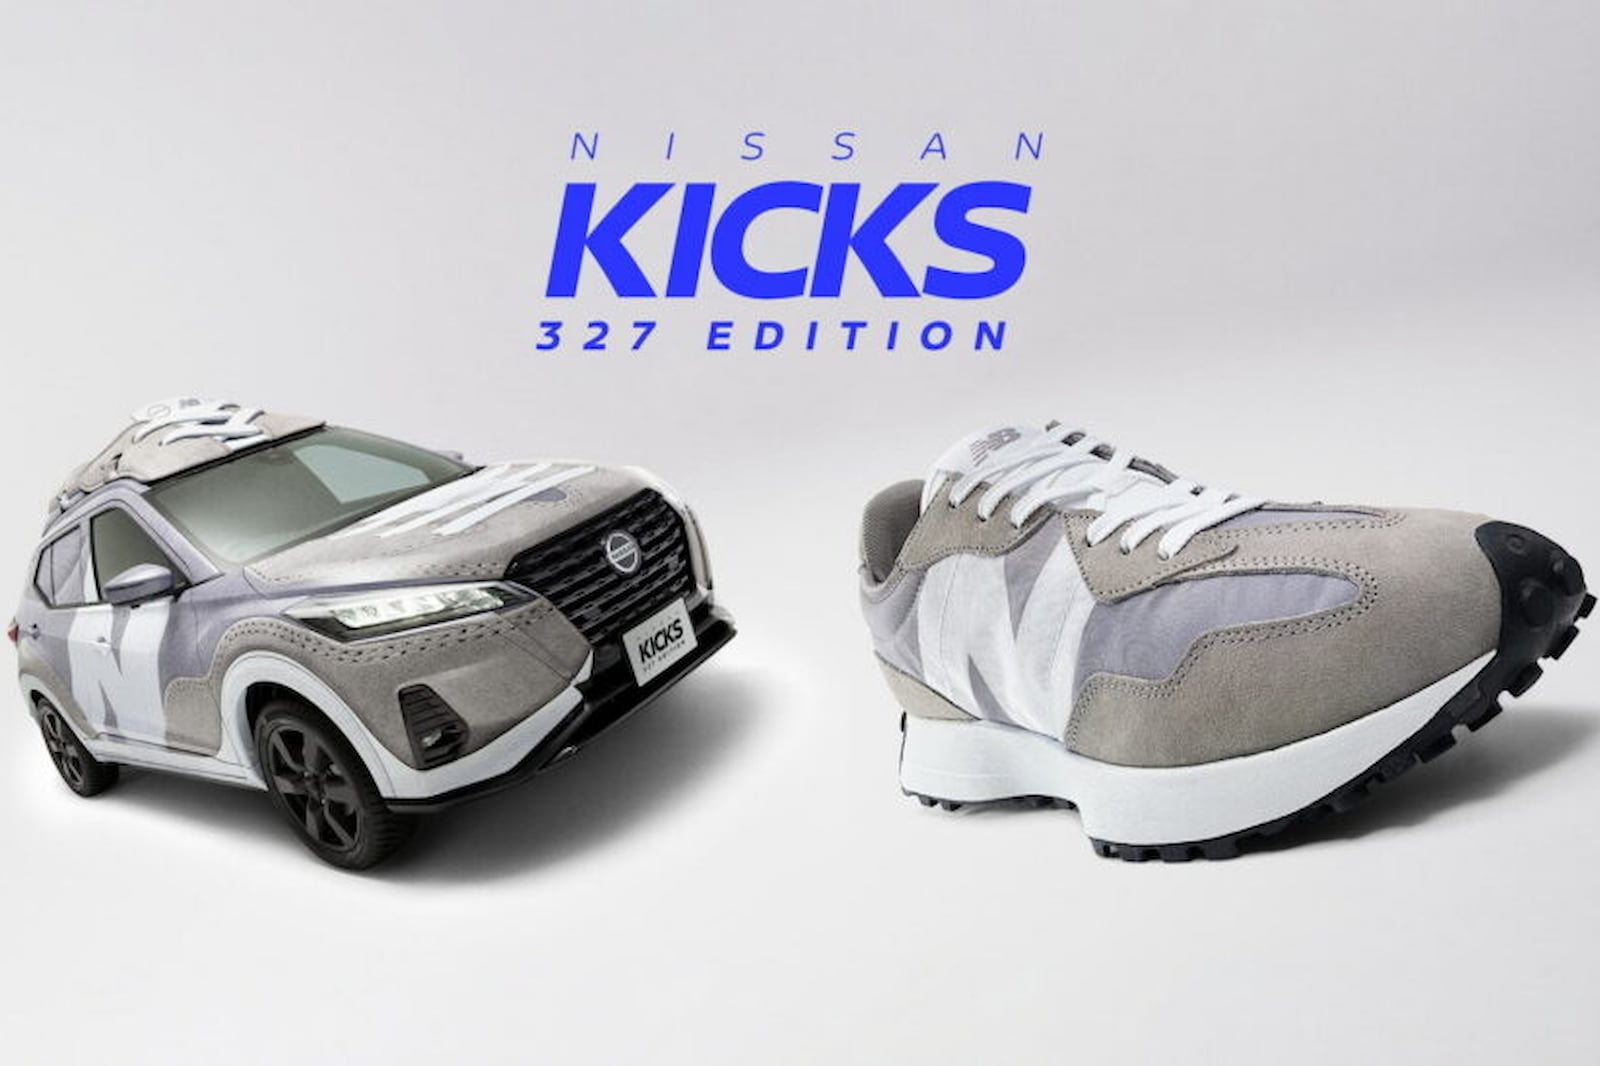 Nissan, похоже, наконец-то ухватился за низко висящие плоды и запустил коллаборацию обуви между автомобилем Nissan Kicks и некоторыми кроссовками (точнее, New Balance 327). Однако эта кампания действительно переворачивает сотрудничество с ног на голо